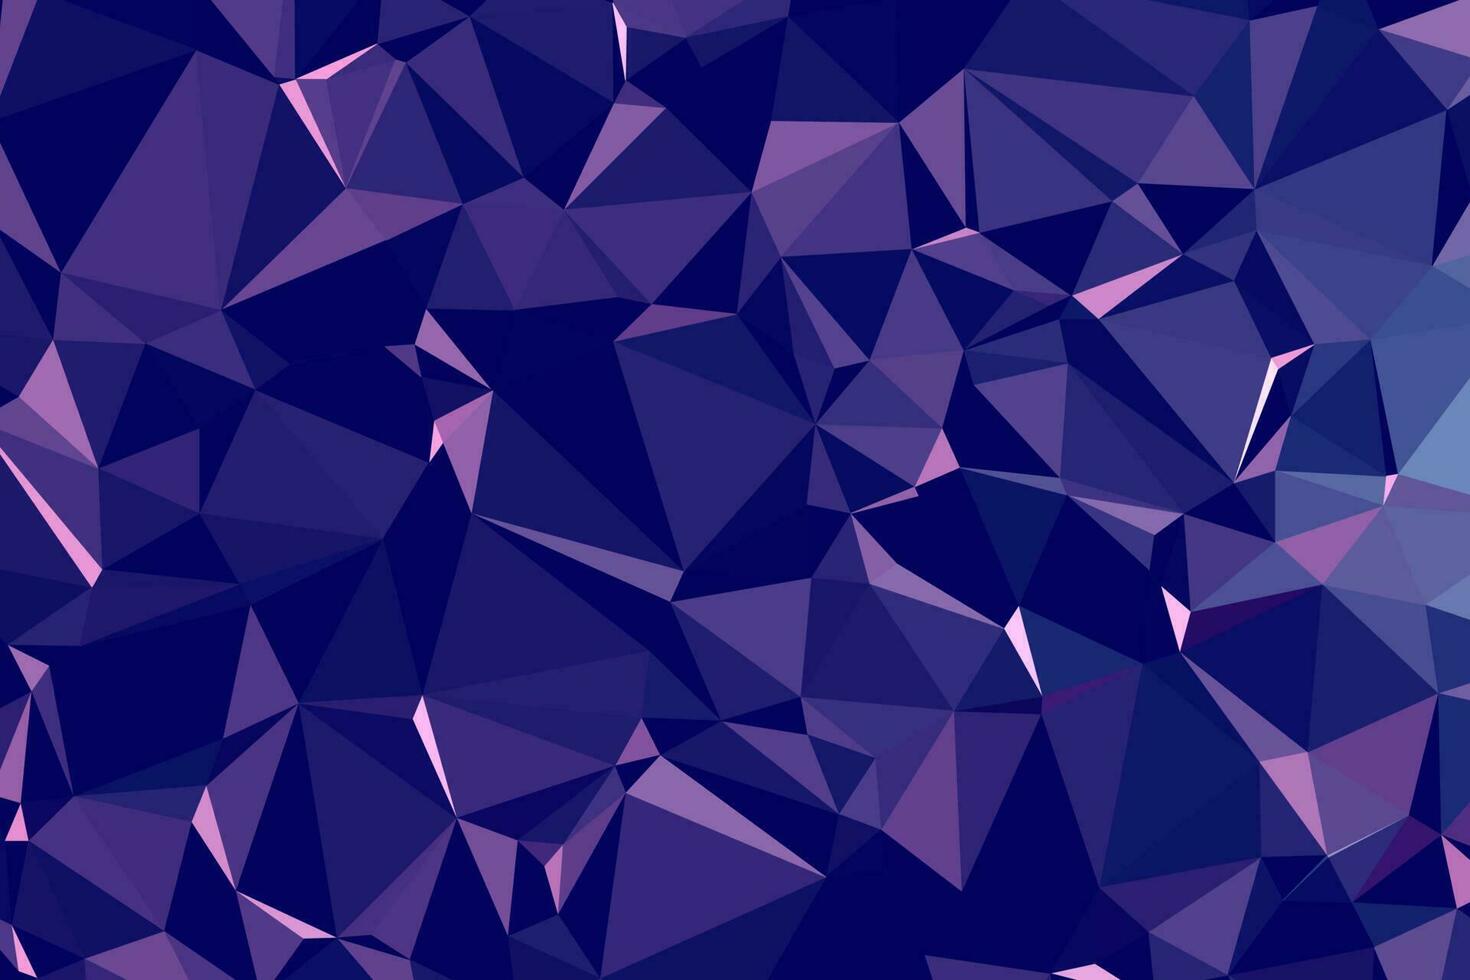 abstrato poligonal azul escuro texturizado. baixo poli geométrico composto por triângulos de diferentes tamanhos e cores. uso em capa de design, apresentação, cartão de visita ou site. vetor